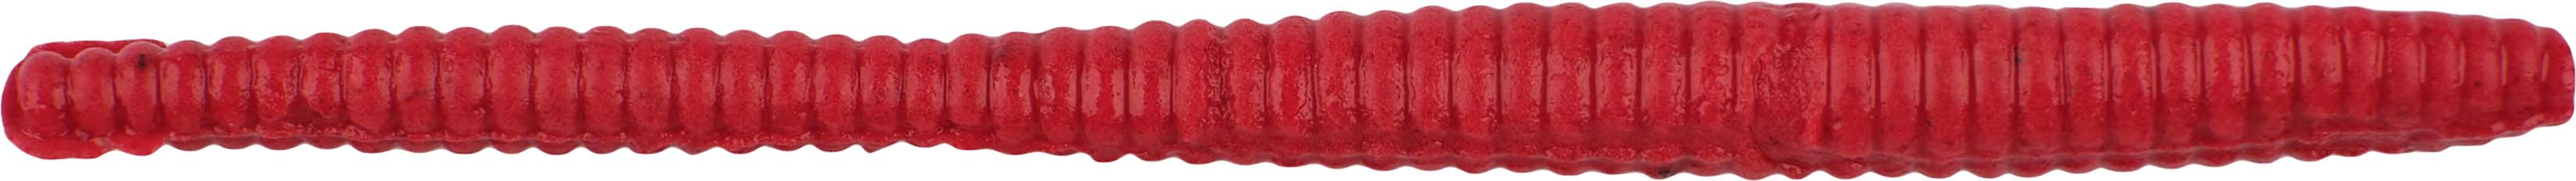 Berkley Gulp! Floating Trout Worm - Fluorescent Red